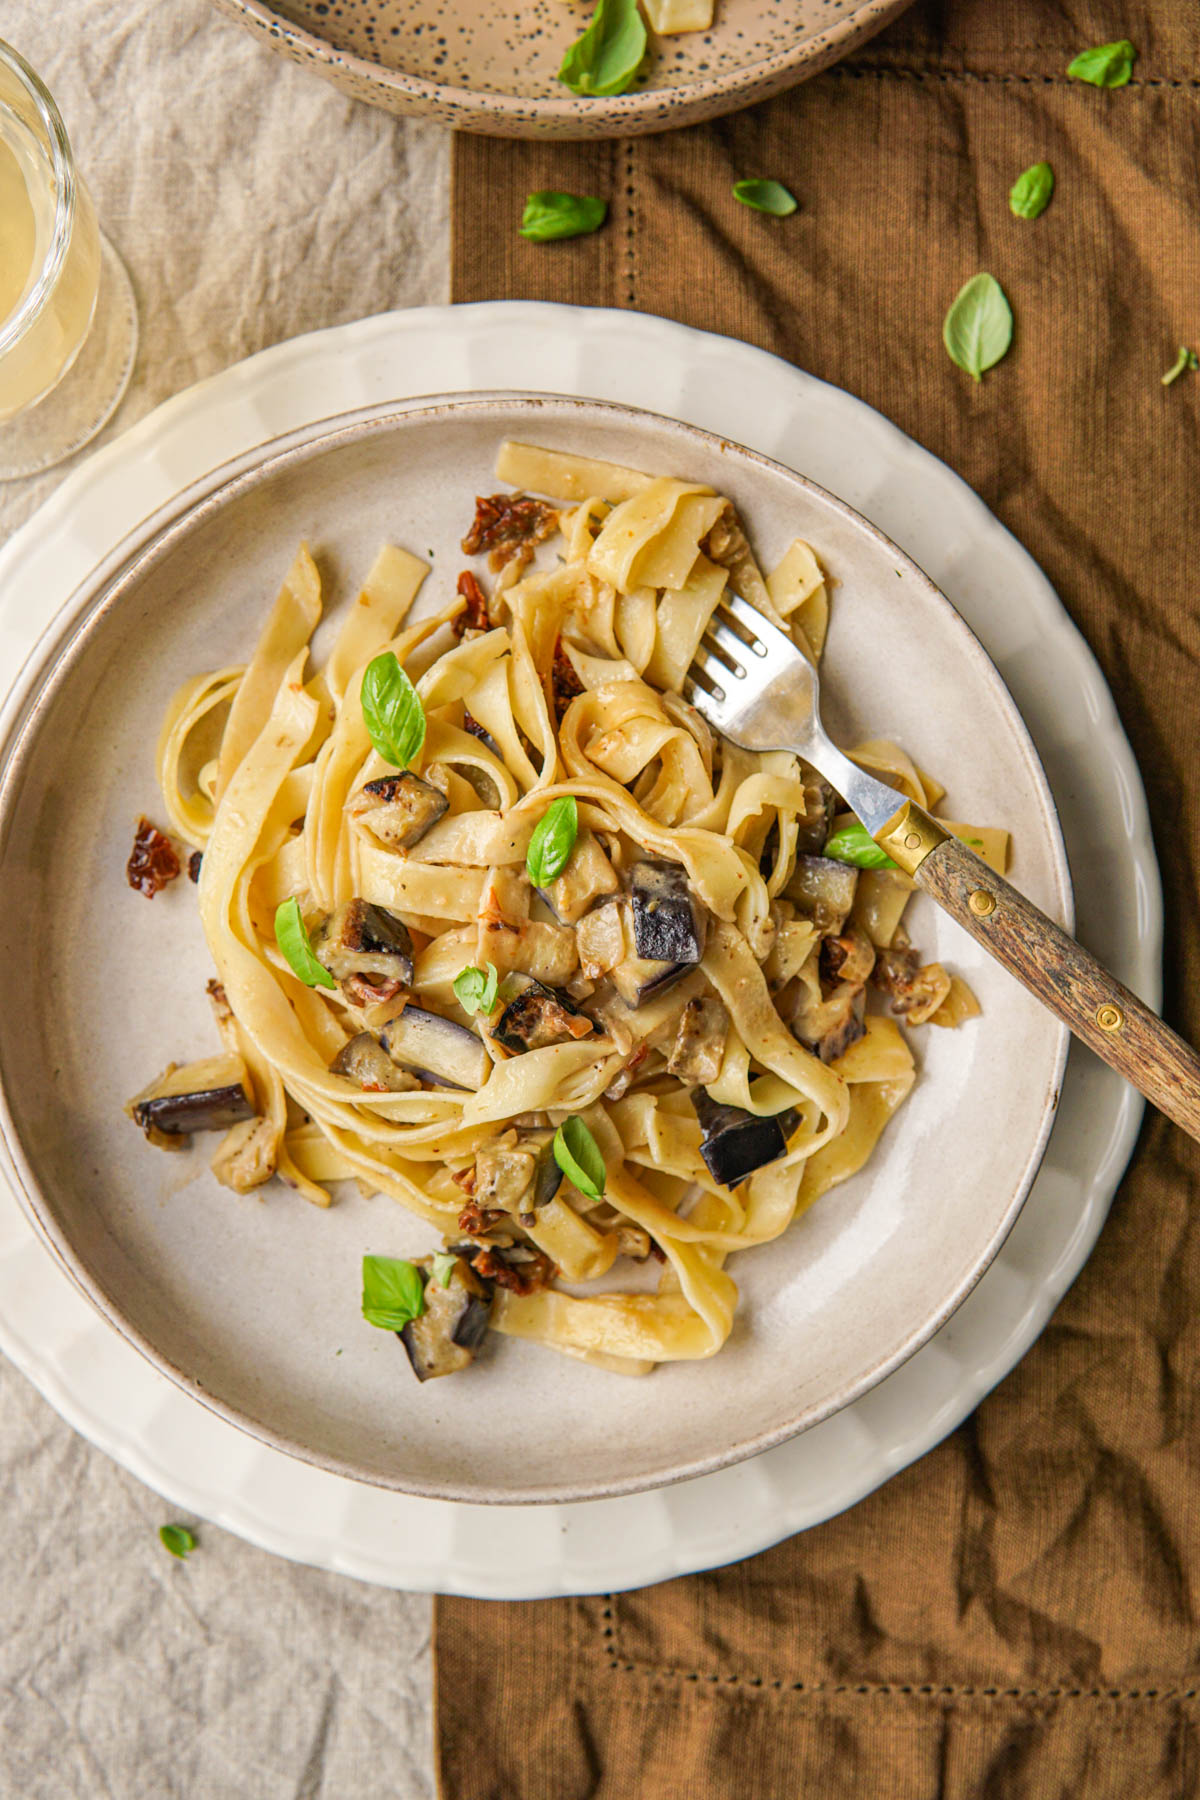 Vegan recept voor romige pasta met aubergine